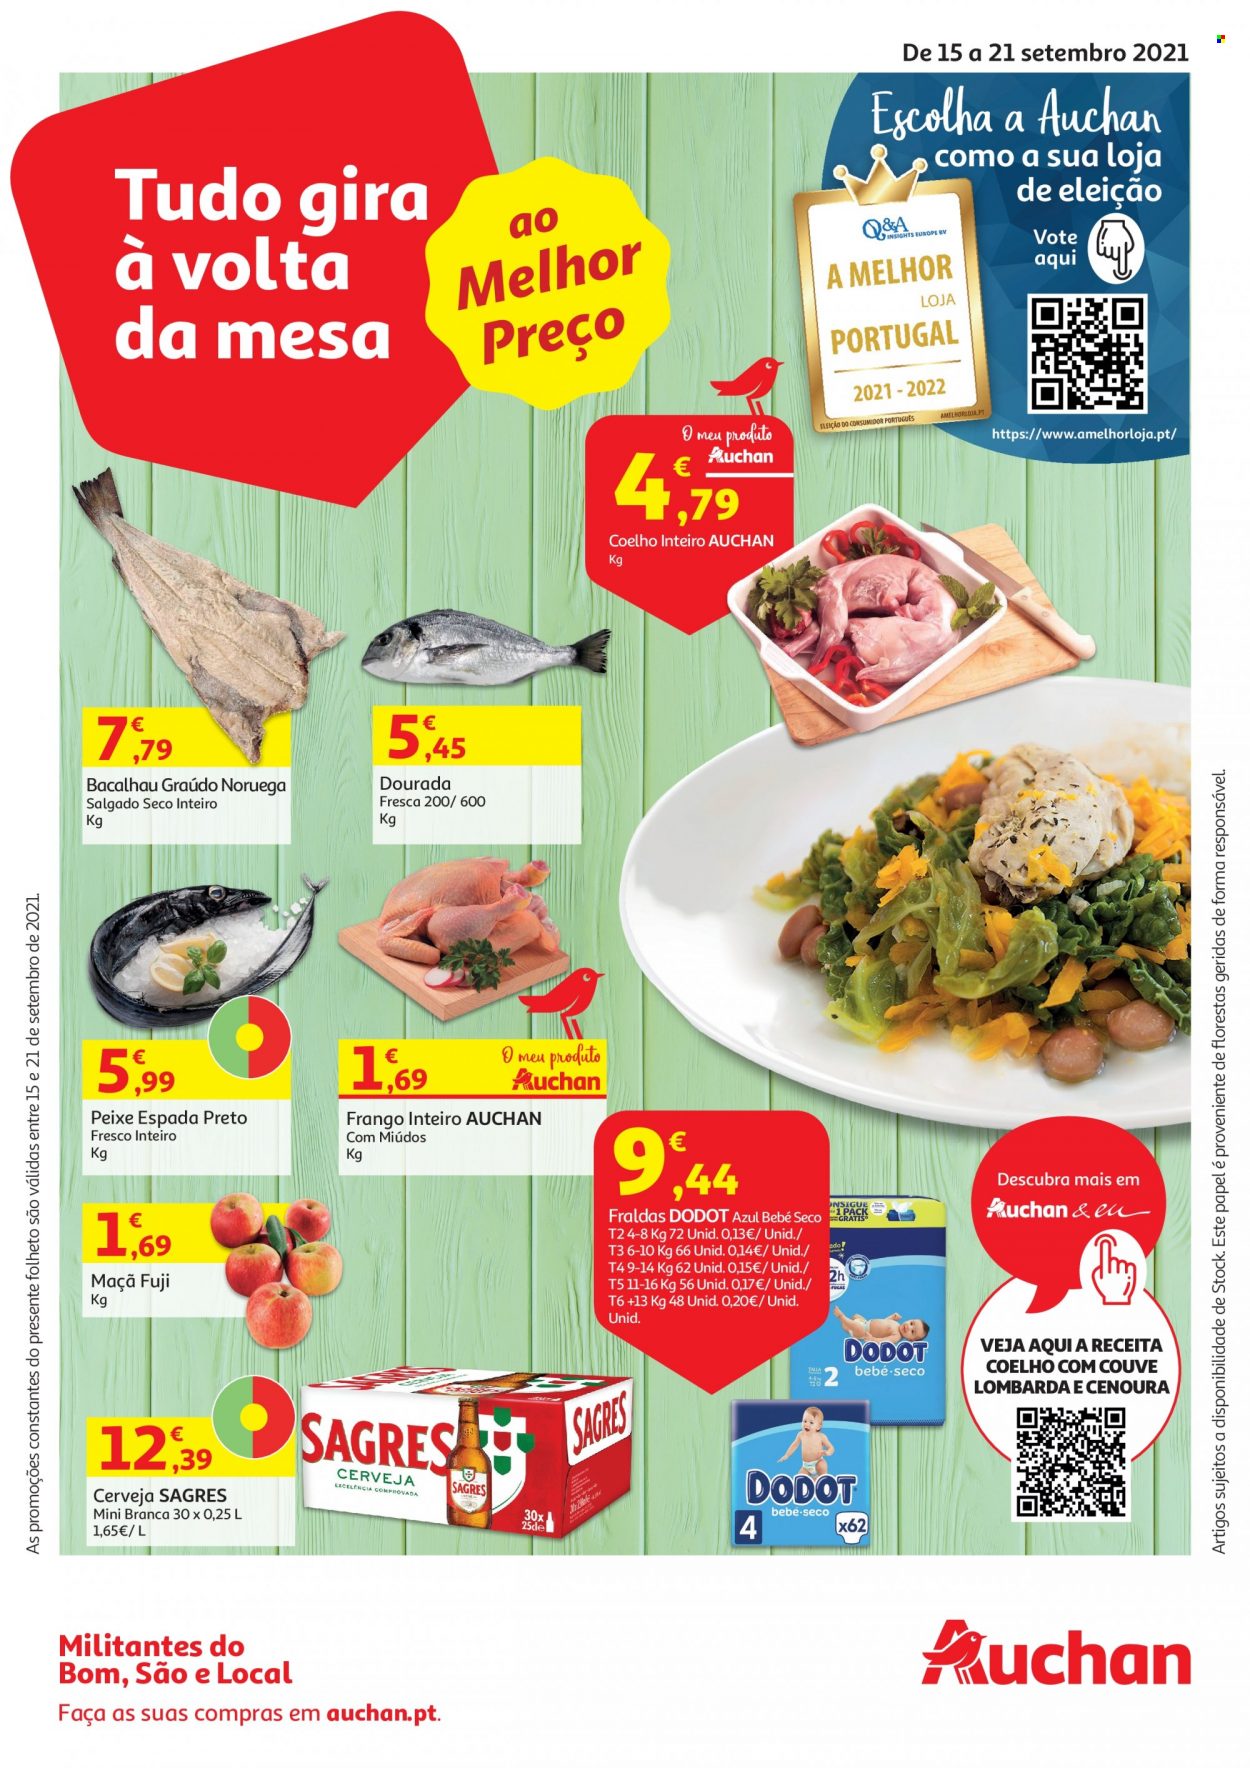 thumbnail - Folheto Auchan - 15.9.2021 - 21.9.2021 - Produtos em promoção - Sagres, cerveja, maçã, couve, frango, frango inteiro, coelho, bacalhau, peixe espada, peixe, fraldas, Dodot. Página 1.